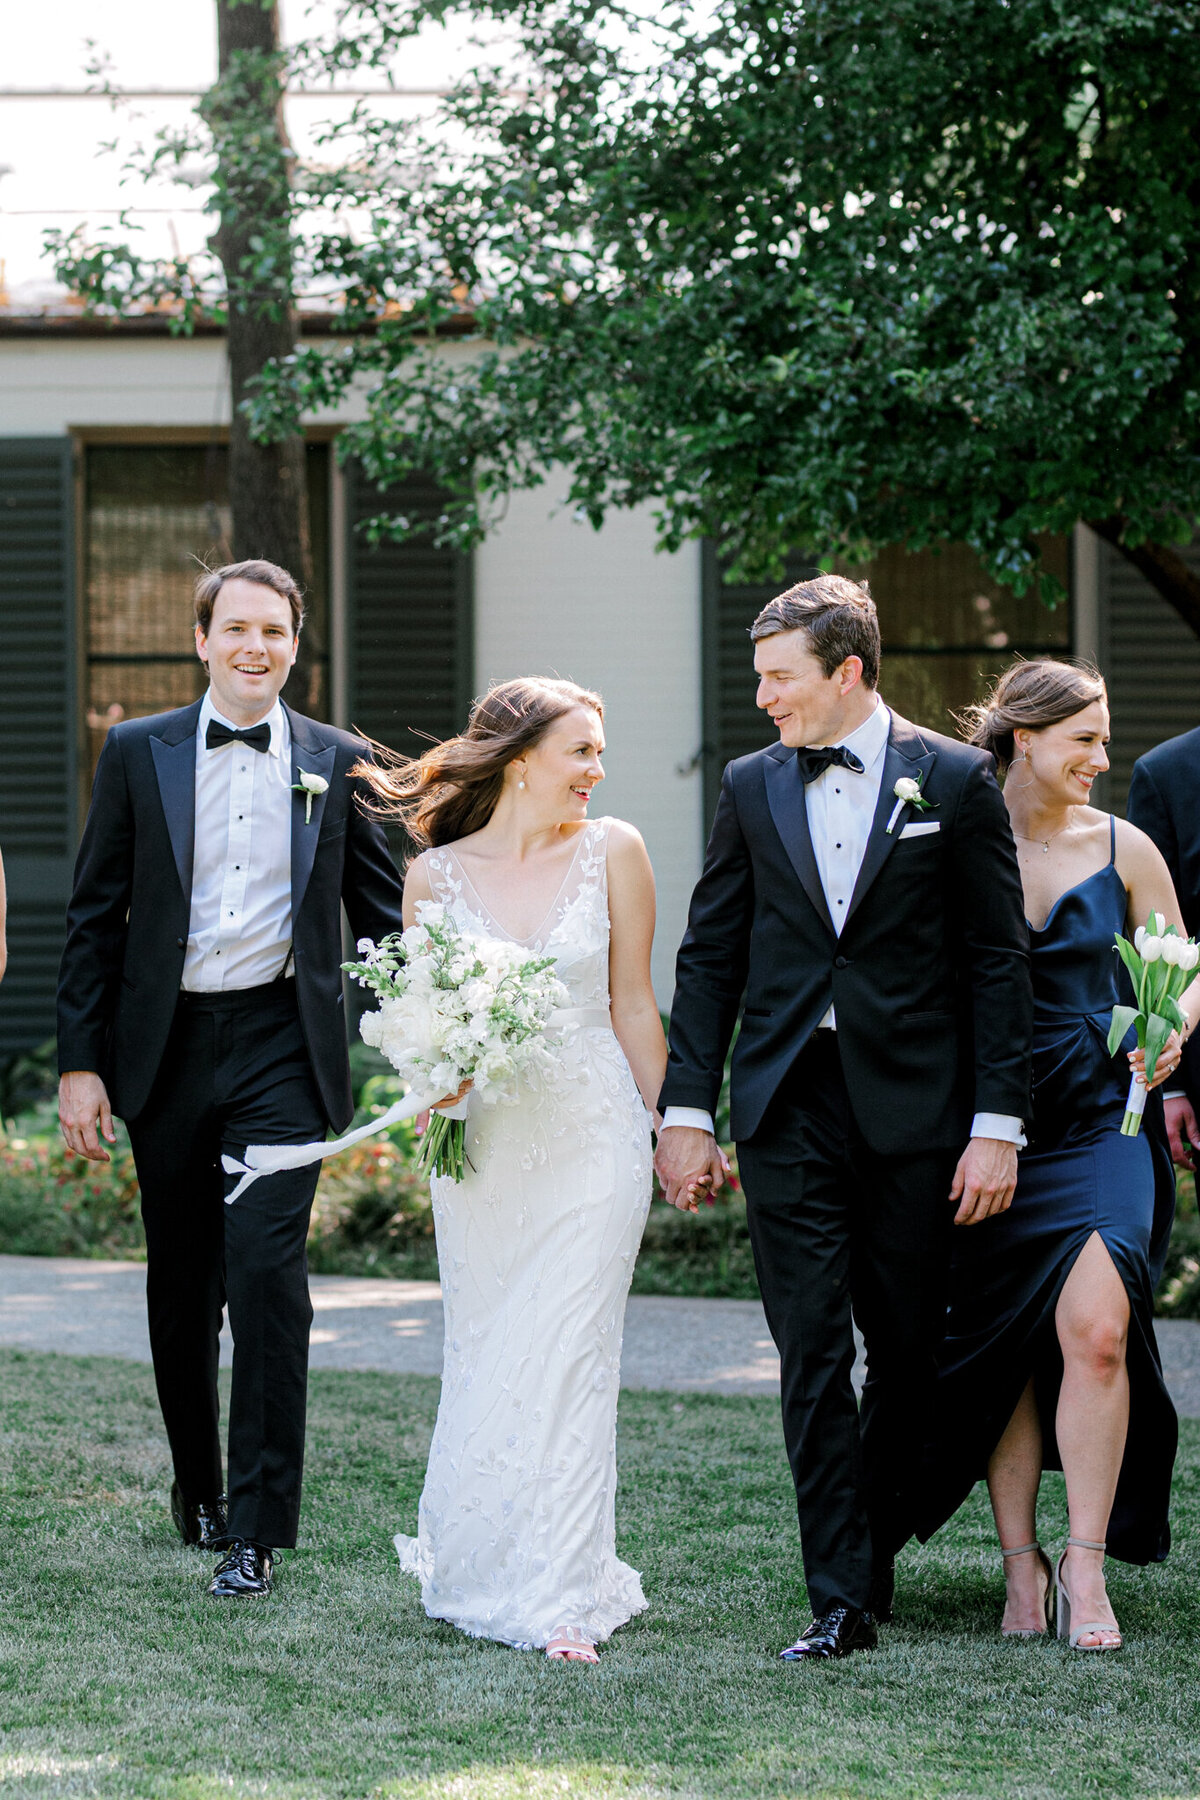 Gena & Matt's Wedding at the Dallas Arboretum | Dallas Wedding Photographer | Sami Kathryn Photography-113